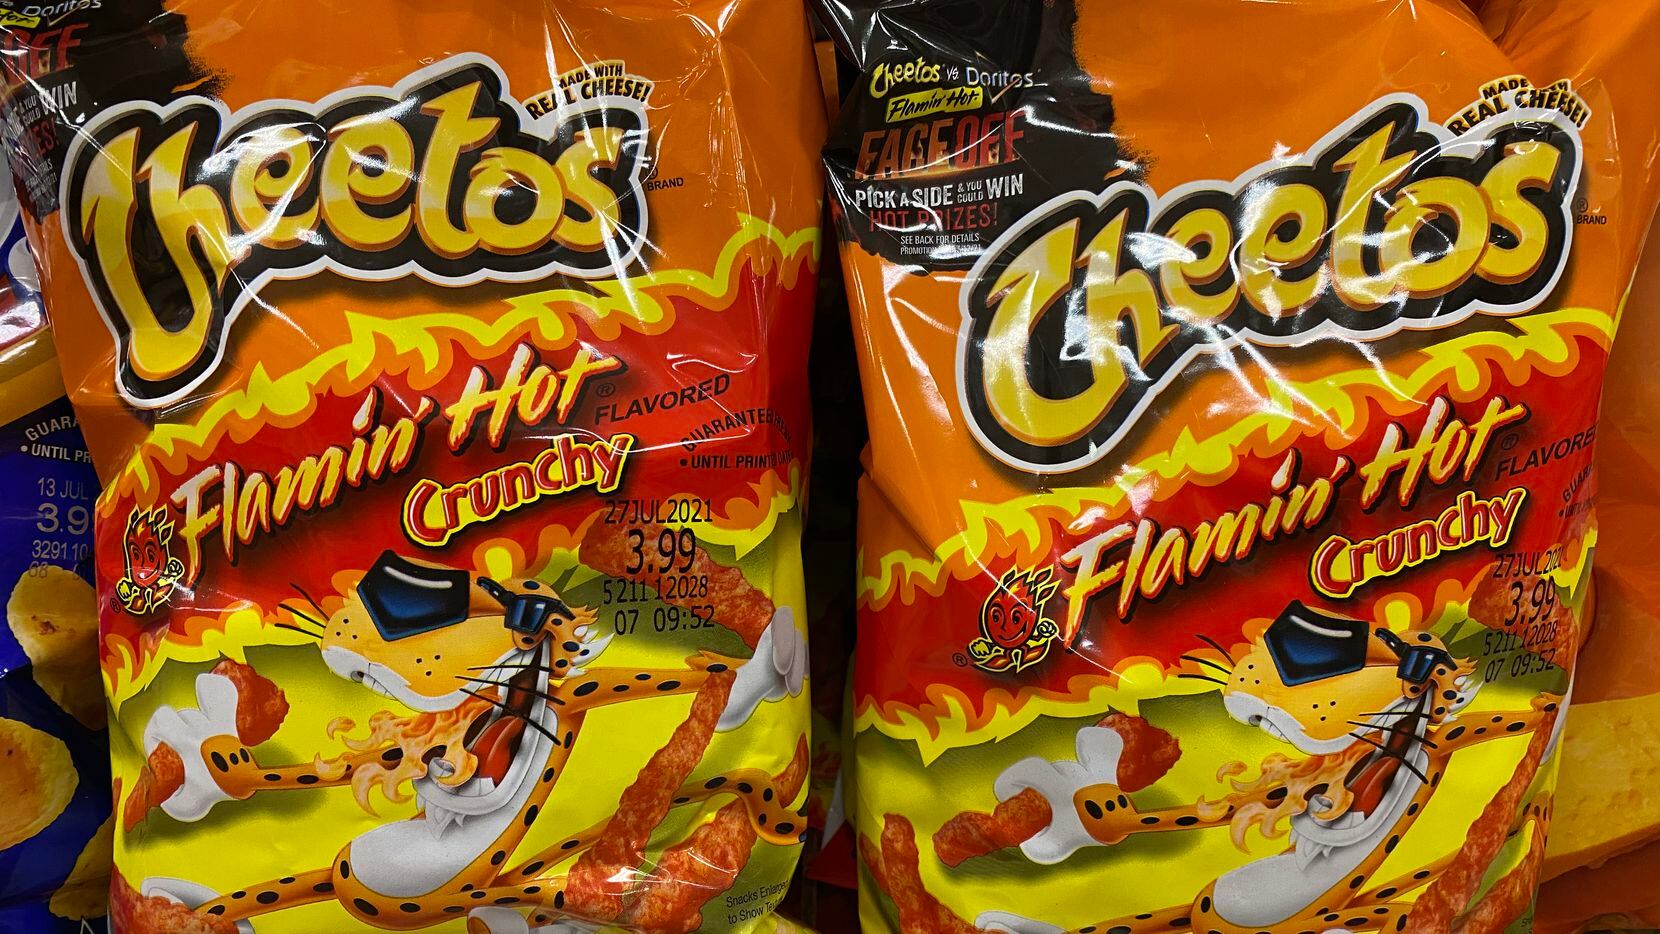 ¿Quién inventó los Flamin' Hot Cheetos? Un exempleado de Frito Lay, Richard Montañez cuya vida está siendo llevada al cine, sostiene que fue su idea, pero luego de negarlo, Frito Lay decidió matizar sus declaraciones.